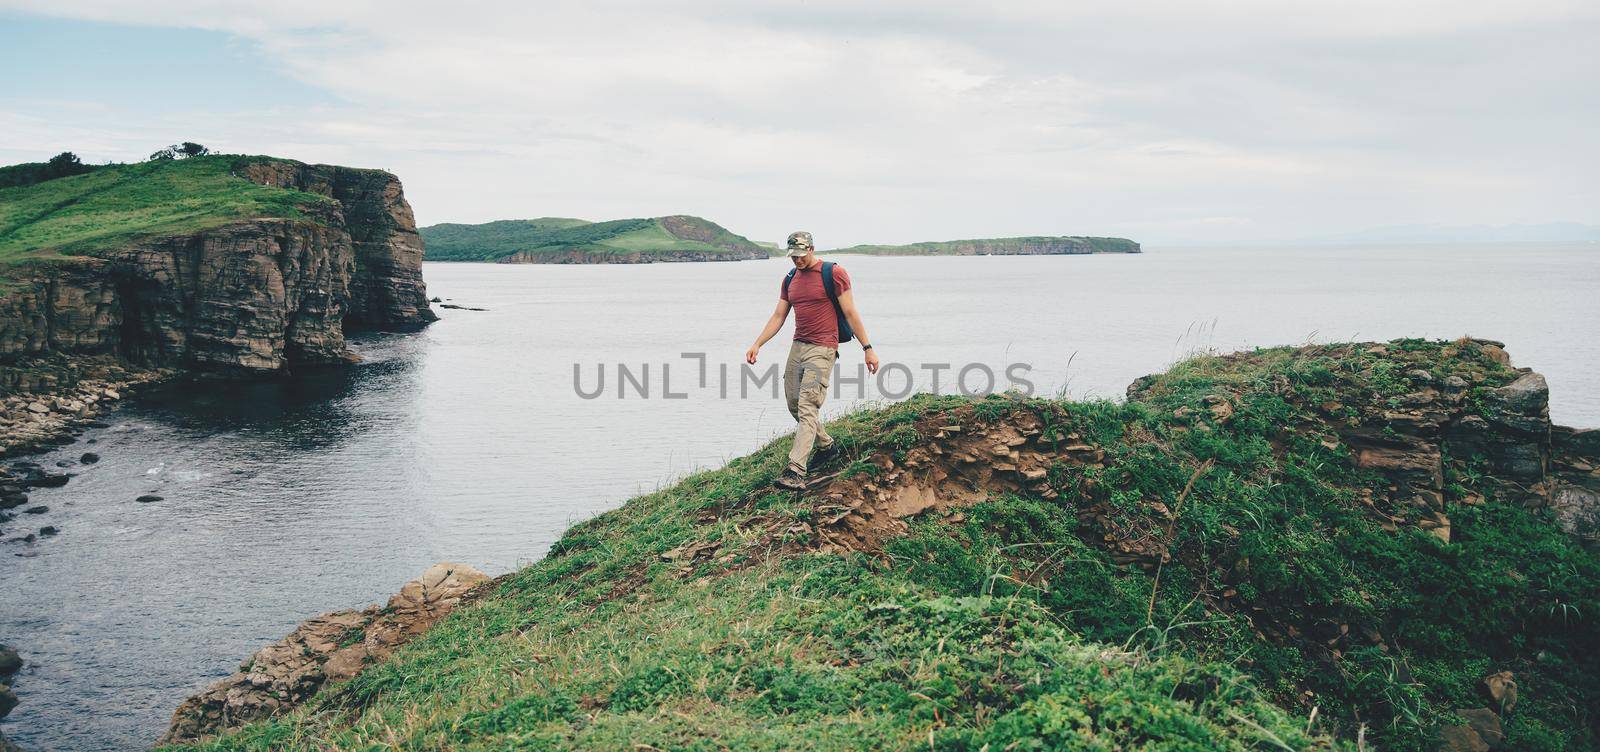 Hiker man walking on coastline near the sea by alexAleksei